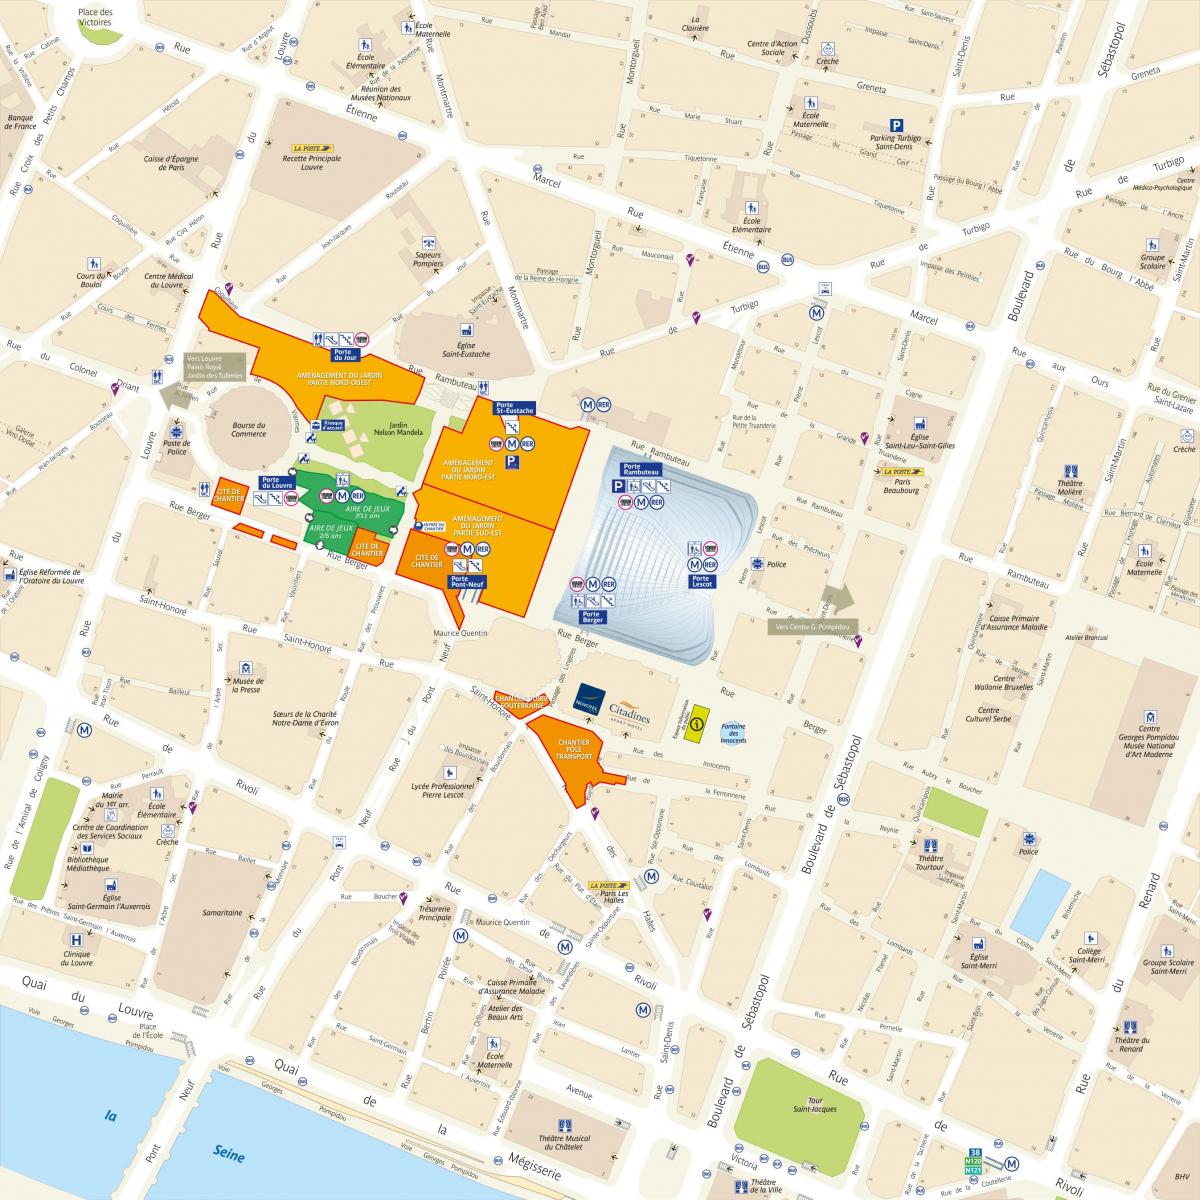 Kart over Distriktet Les Halles